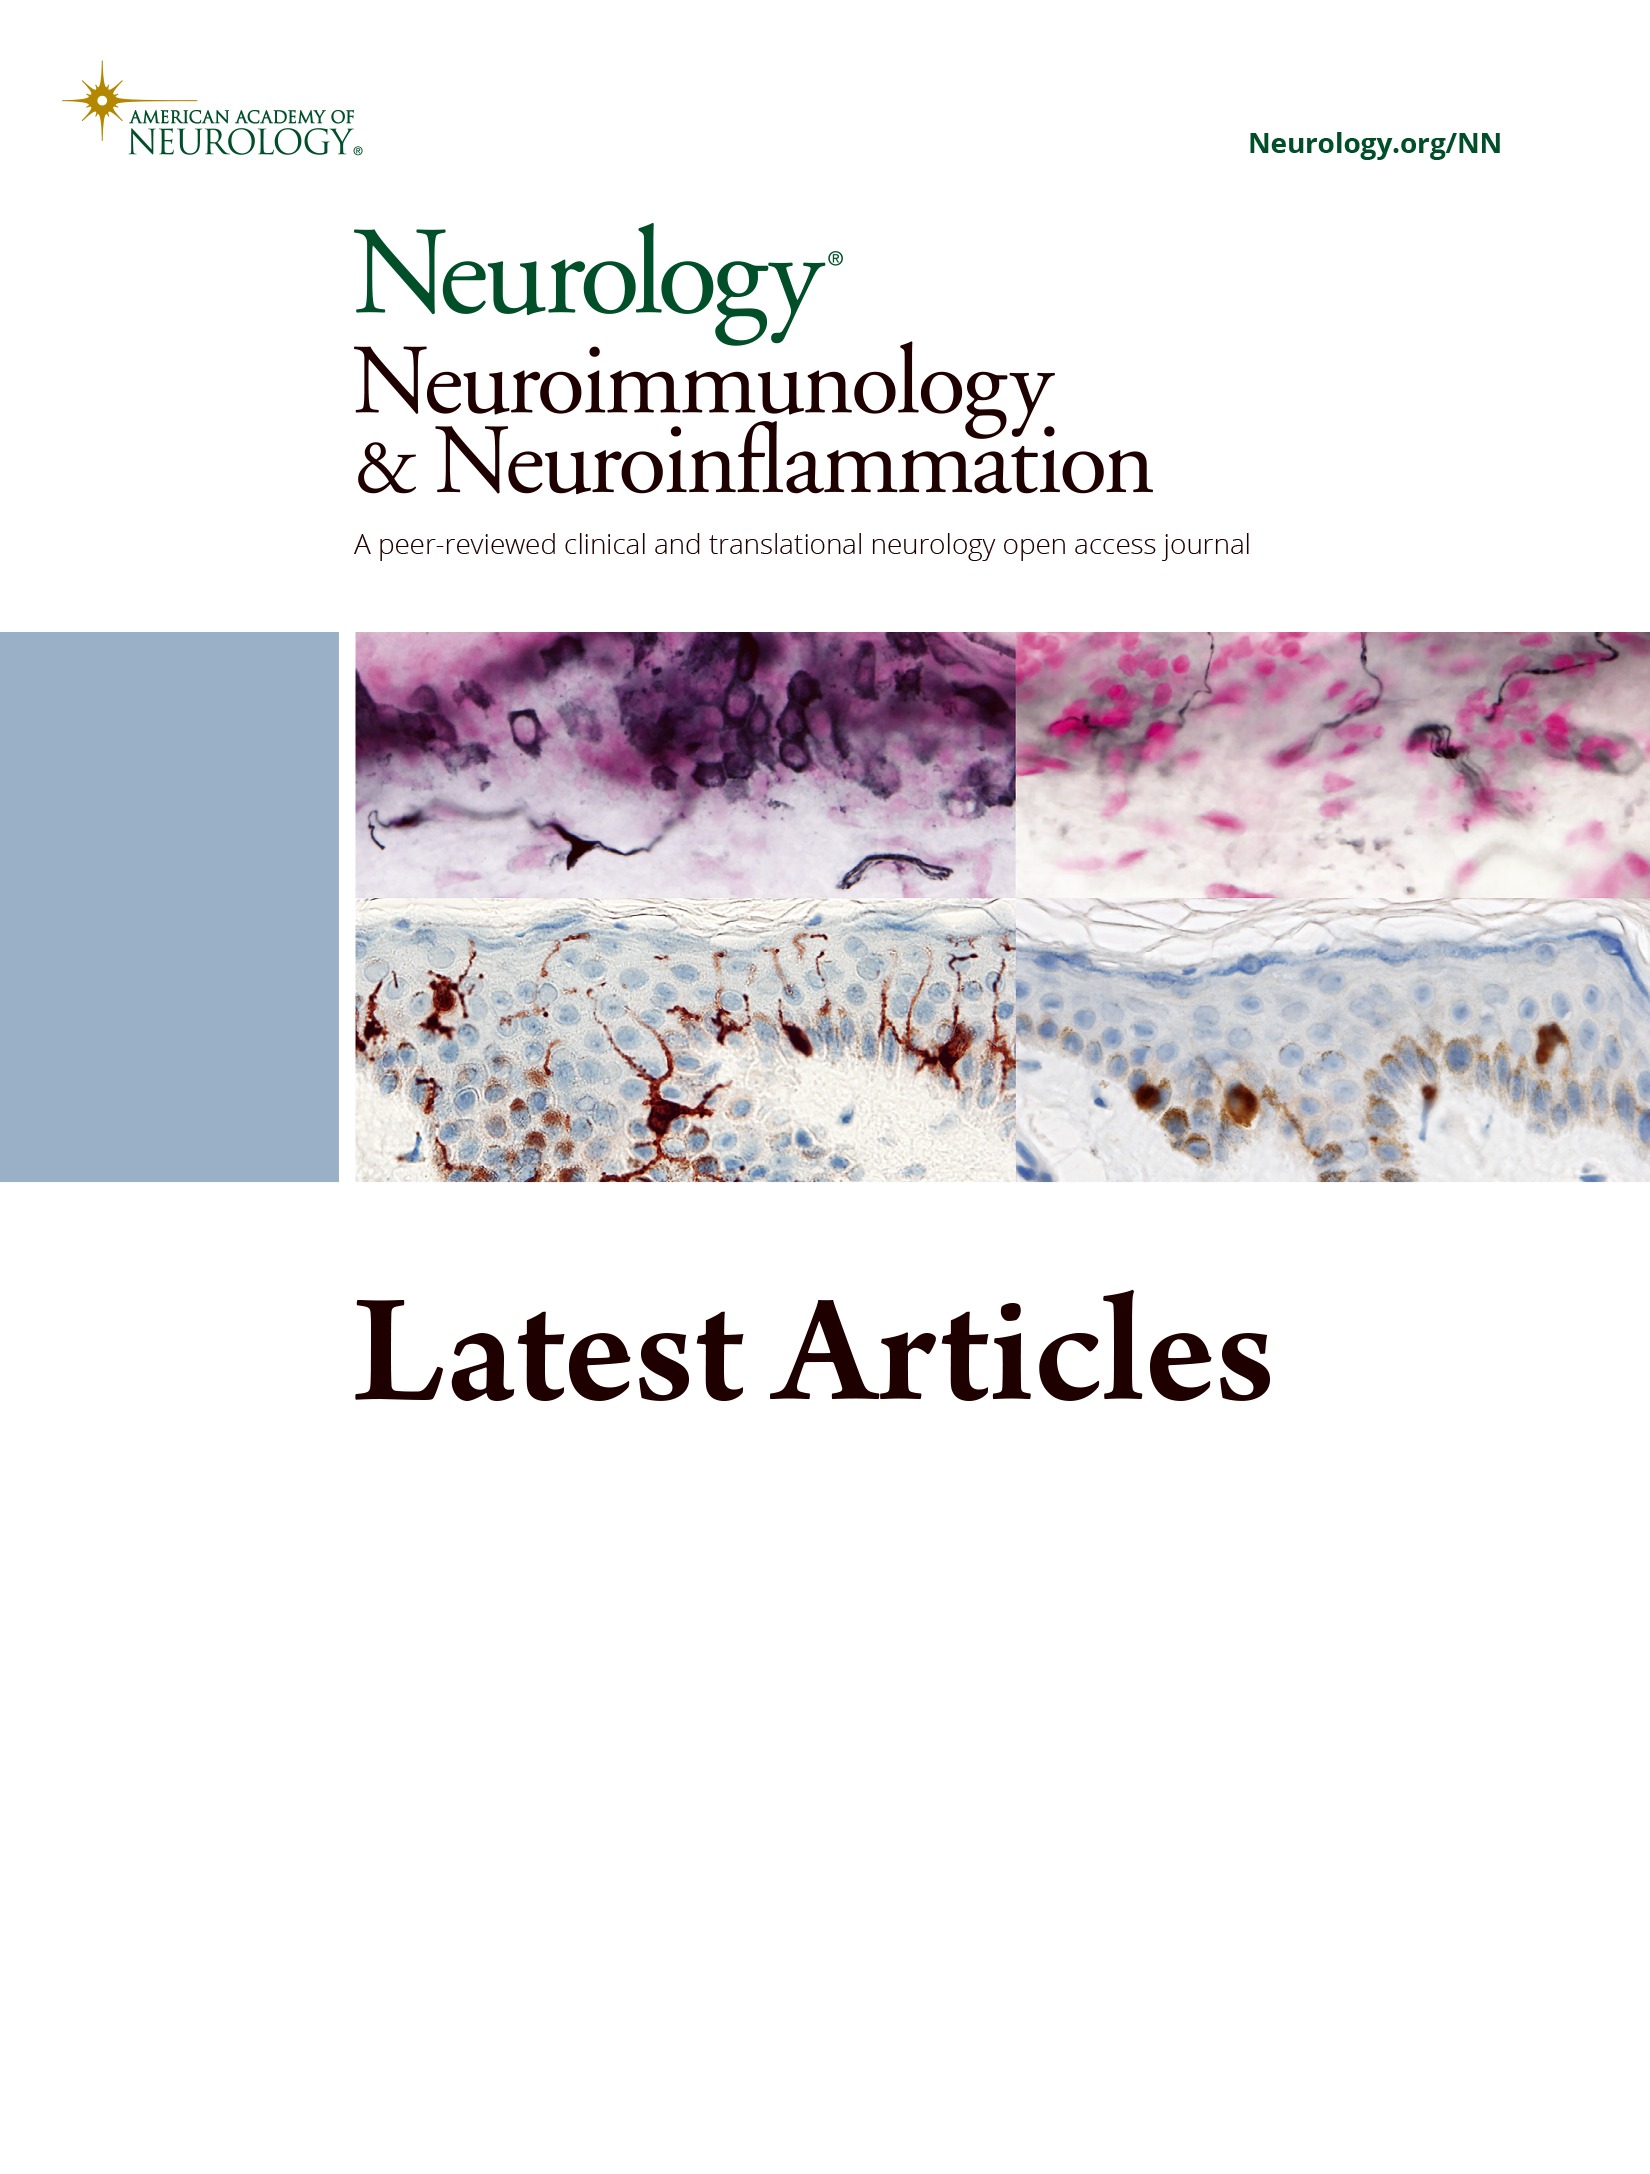 Glial Fibrillary Acidic Protein Autoimmunity After Aseptic Meningitis: A Report of 2 Cases